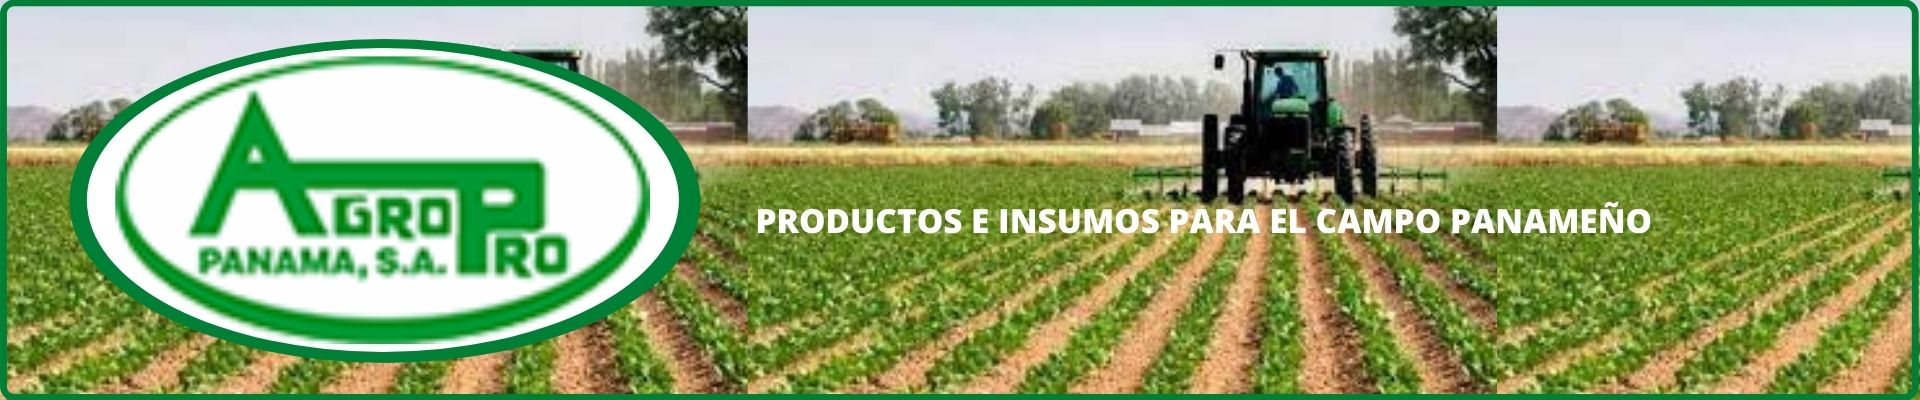 Agropro agroshow banner